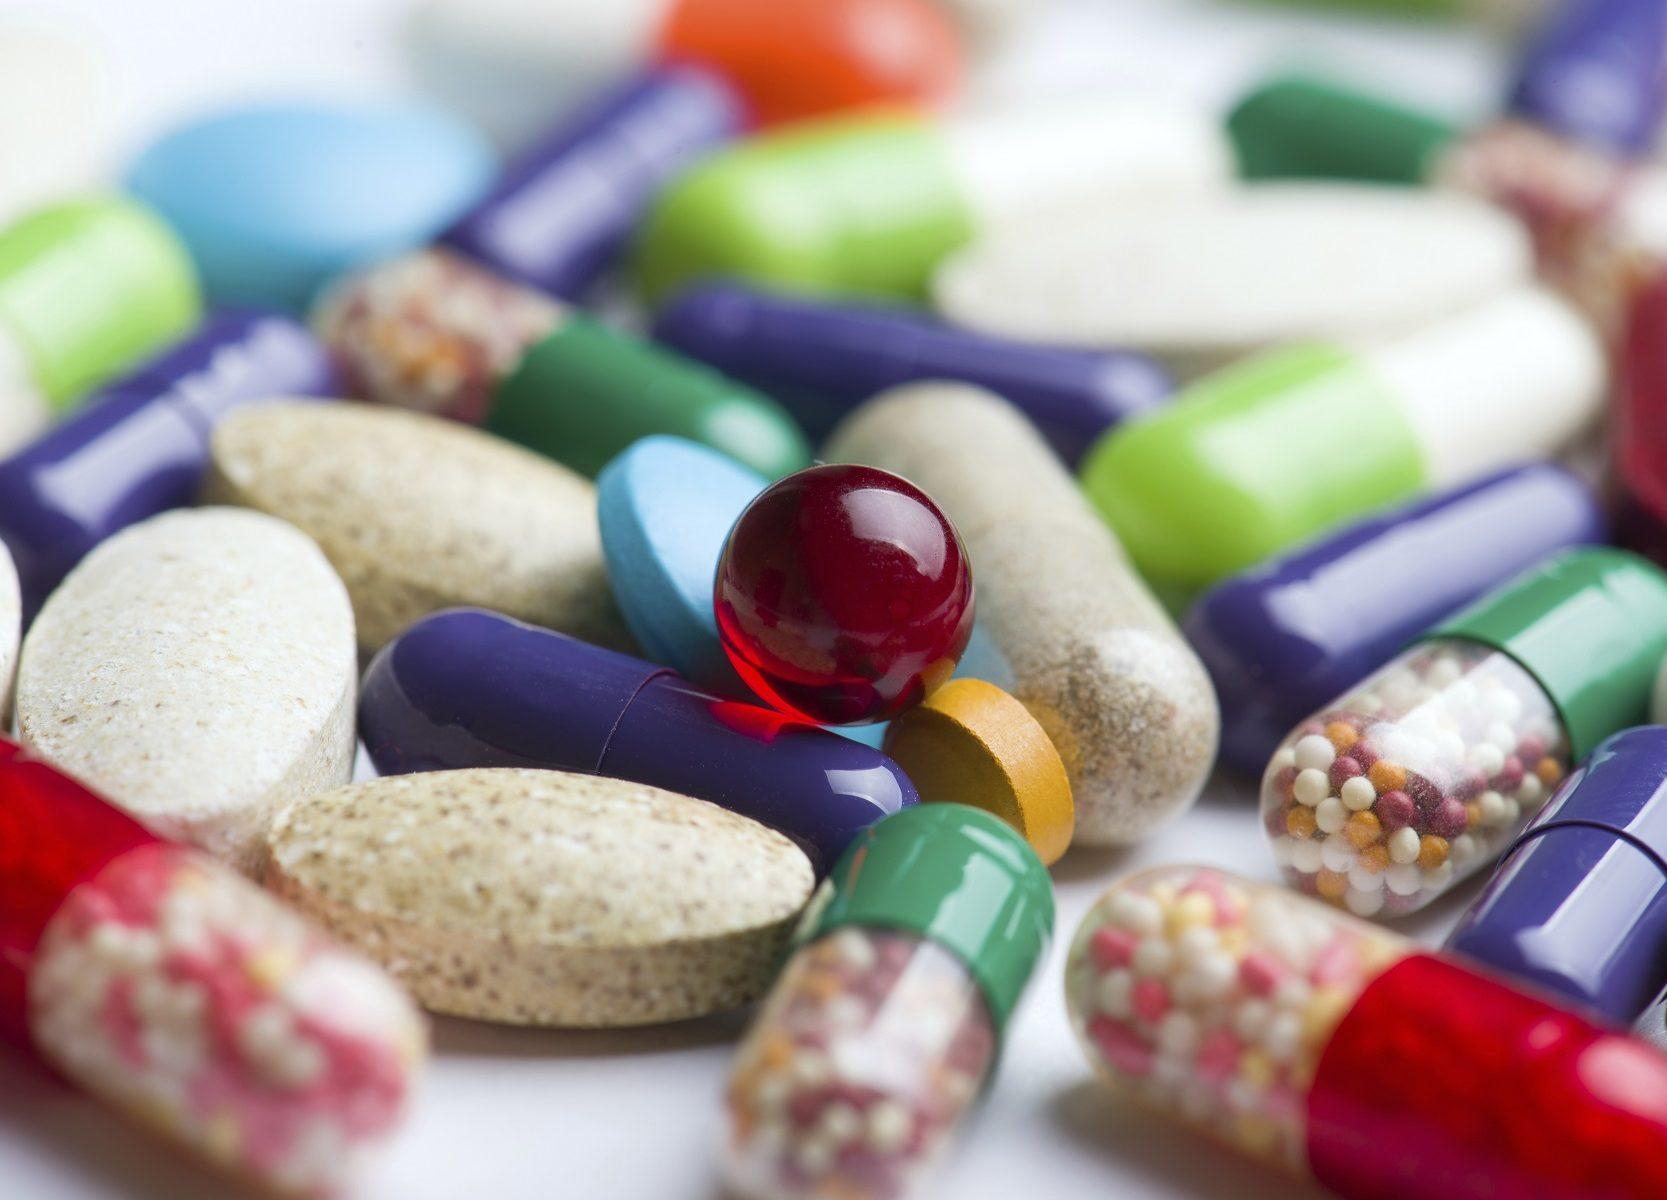 Цены на экспертизу лекарств будут определяться Тарифным советом